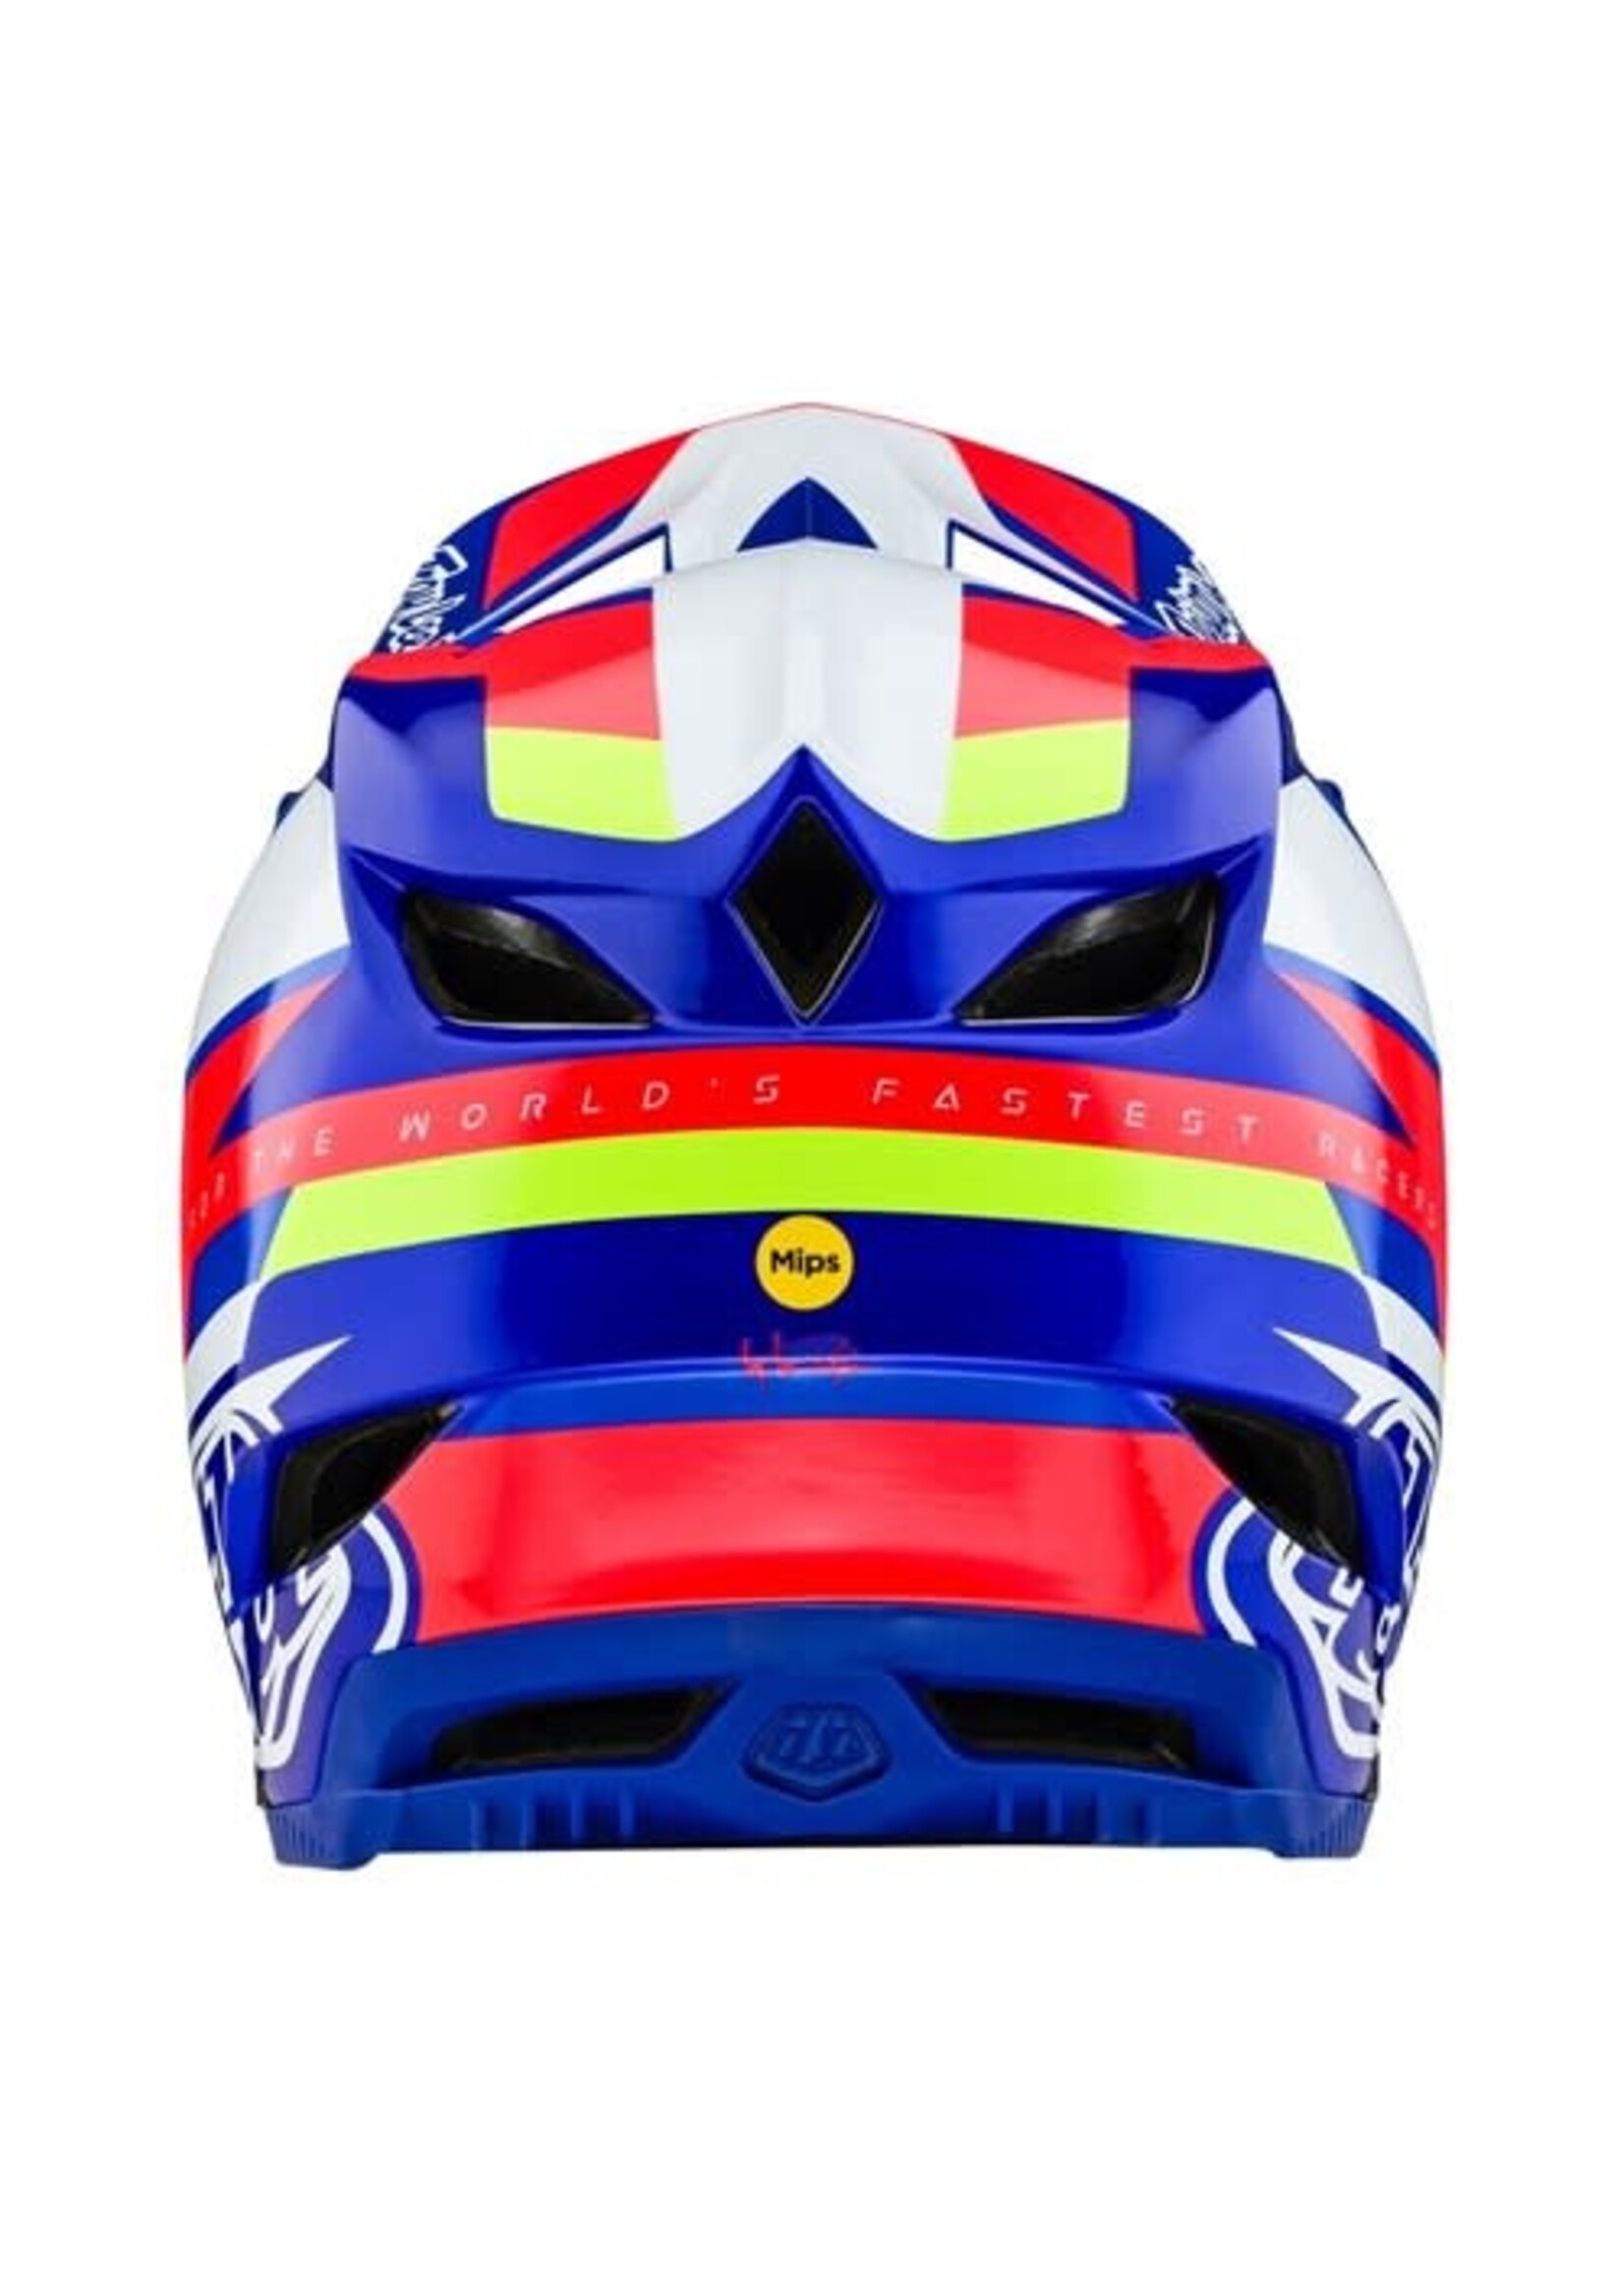 Troylee Designs Helmet TLD 24.1 D4 Composite